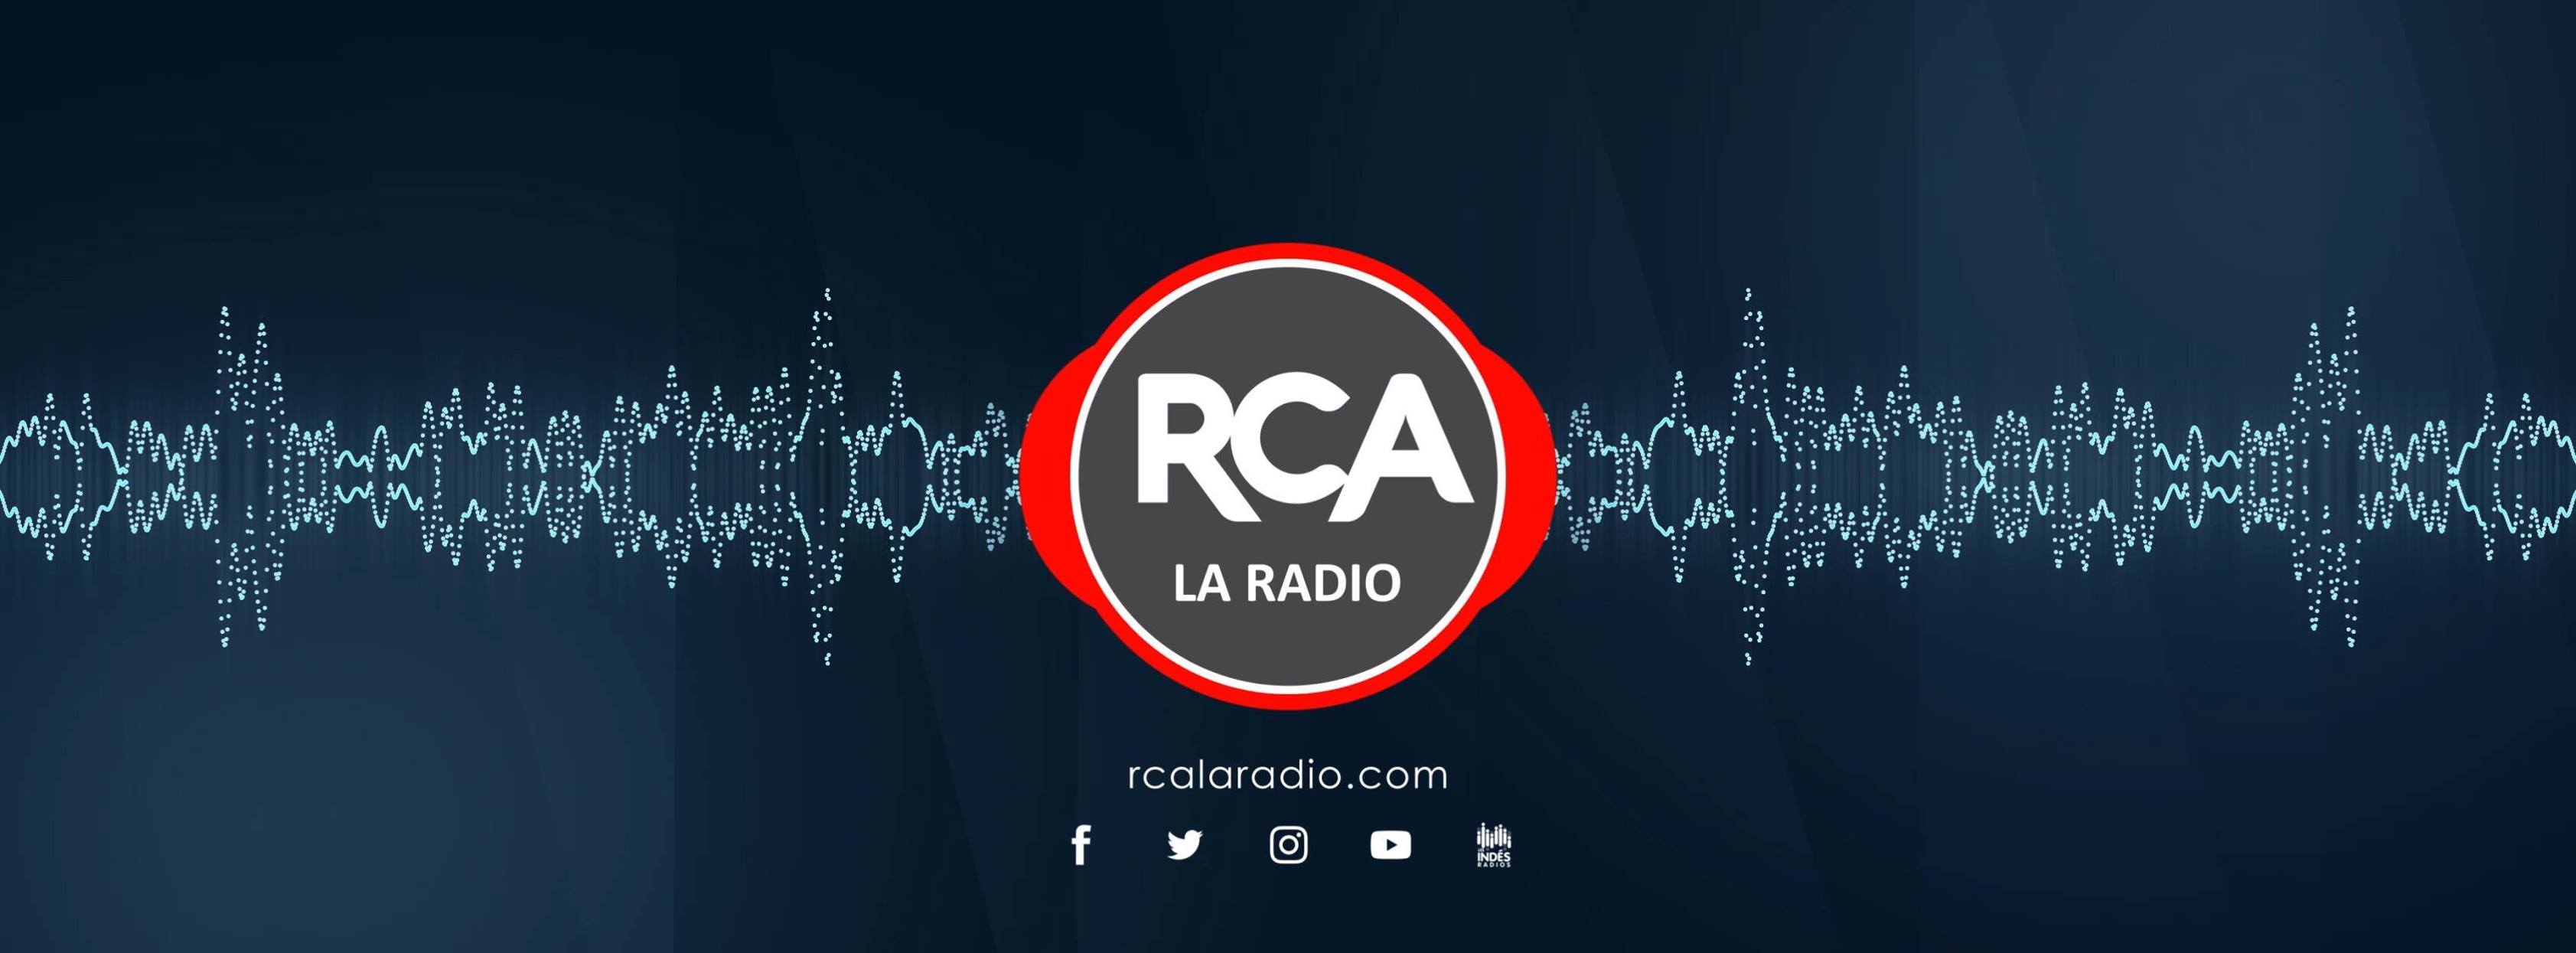 Un nouveau magazine sur RCA La Radio